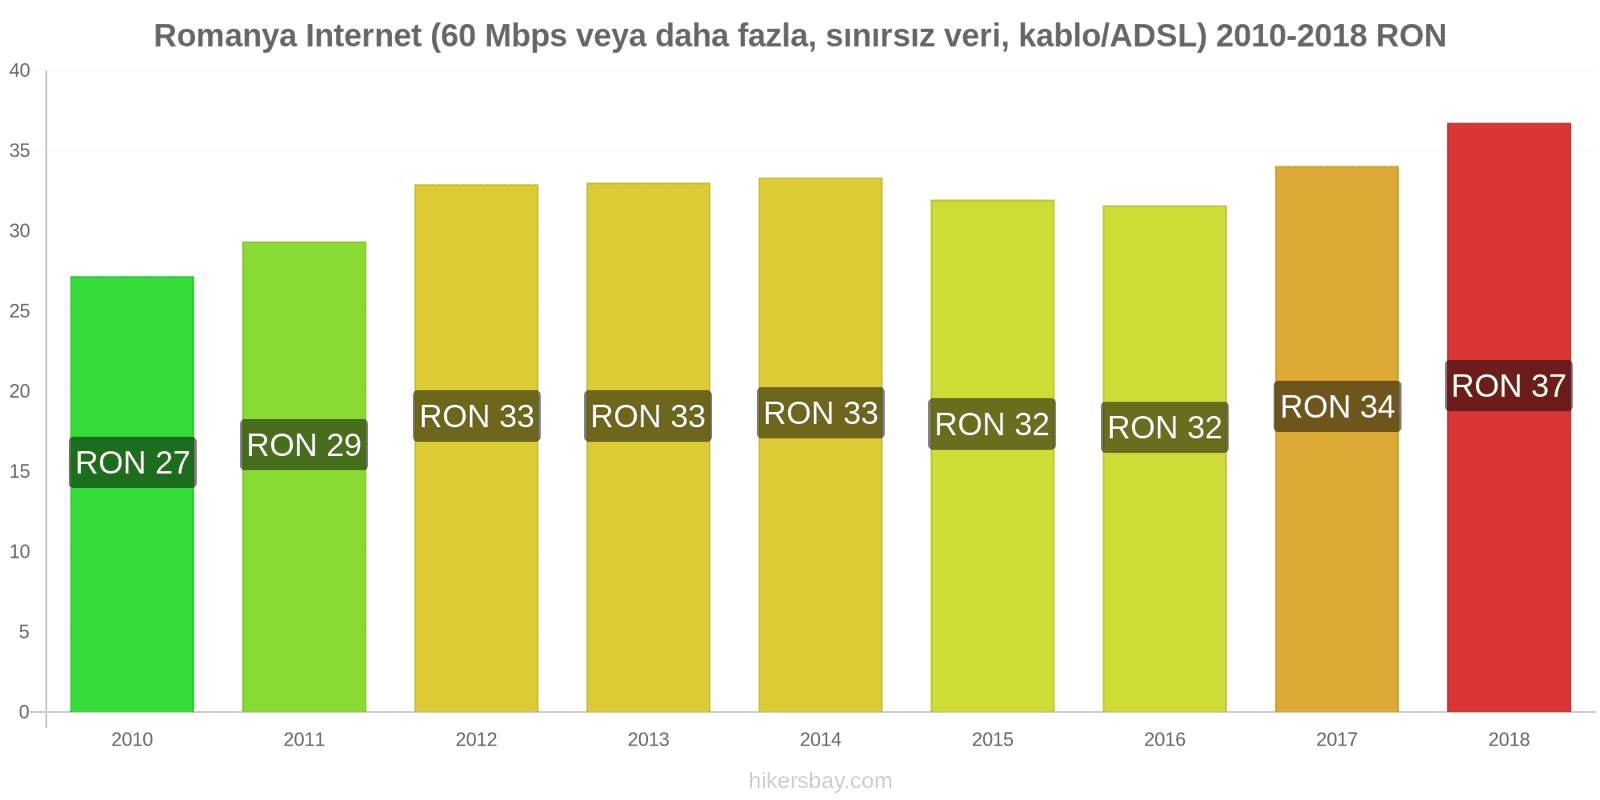 Romanya fiyat değişiklikleri İnternet (60 Mbps veya daha fazla, sınırsız veri, kablo/ADSL) hikersbay.com